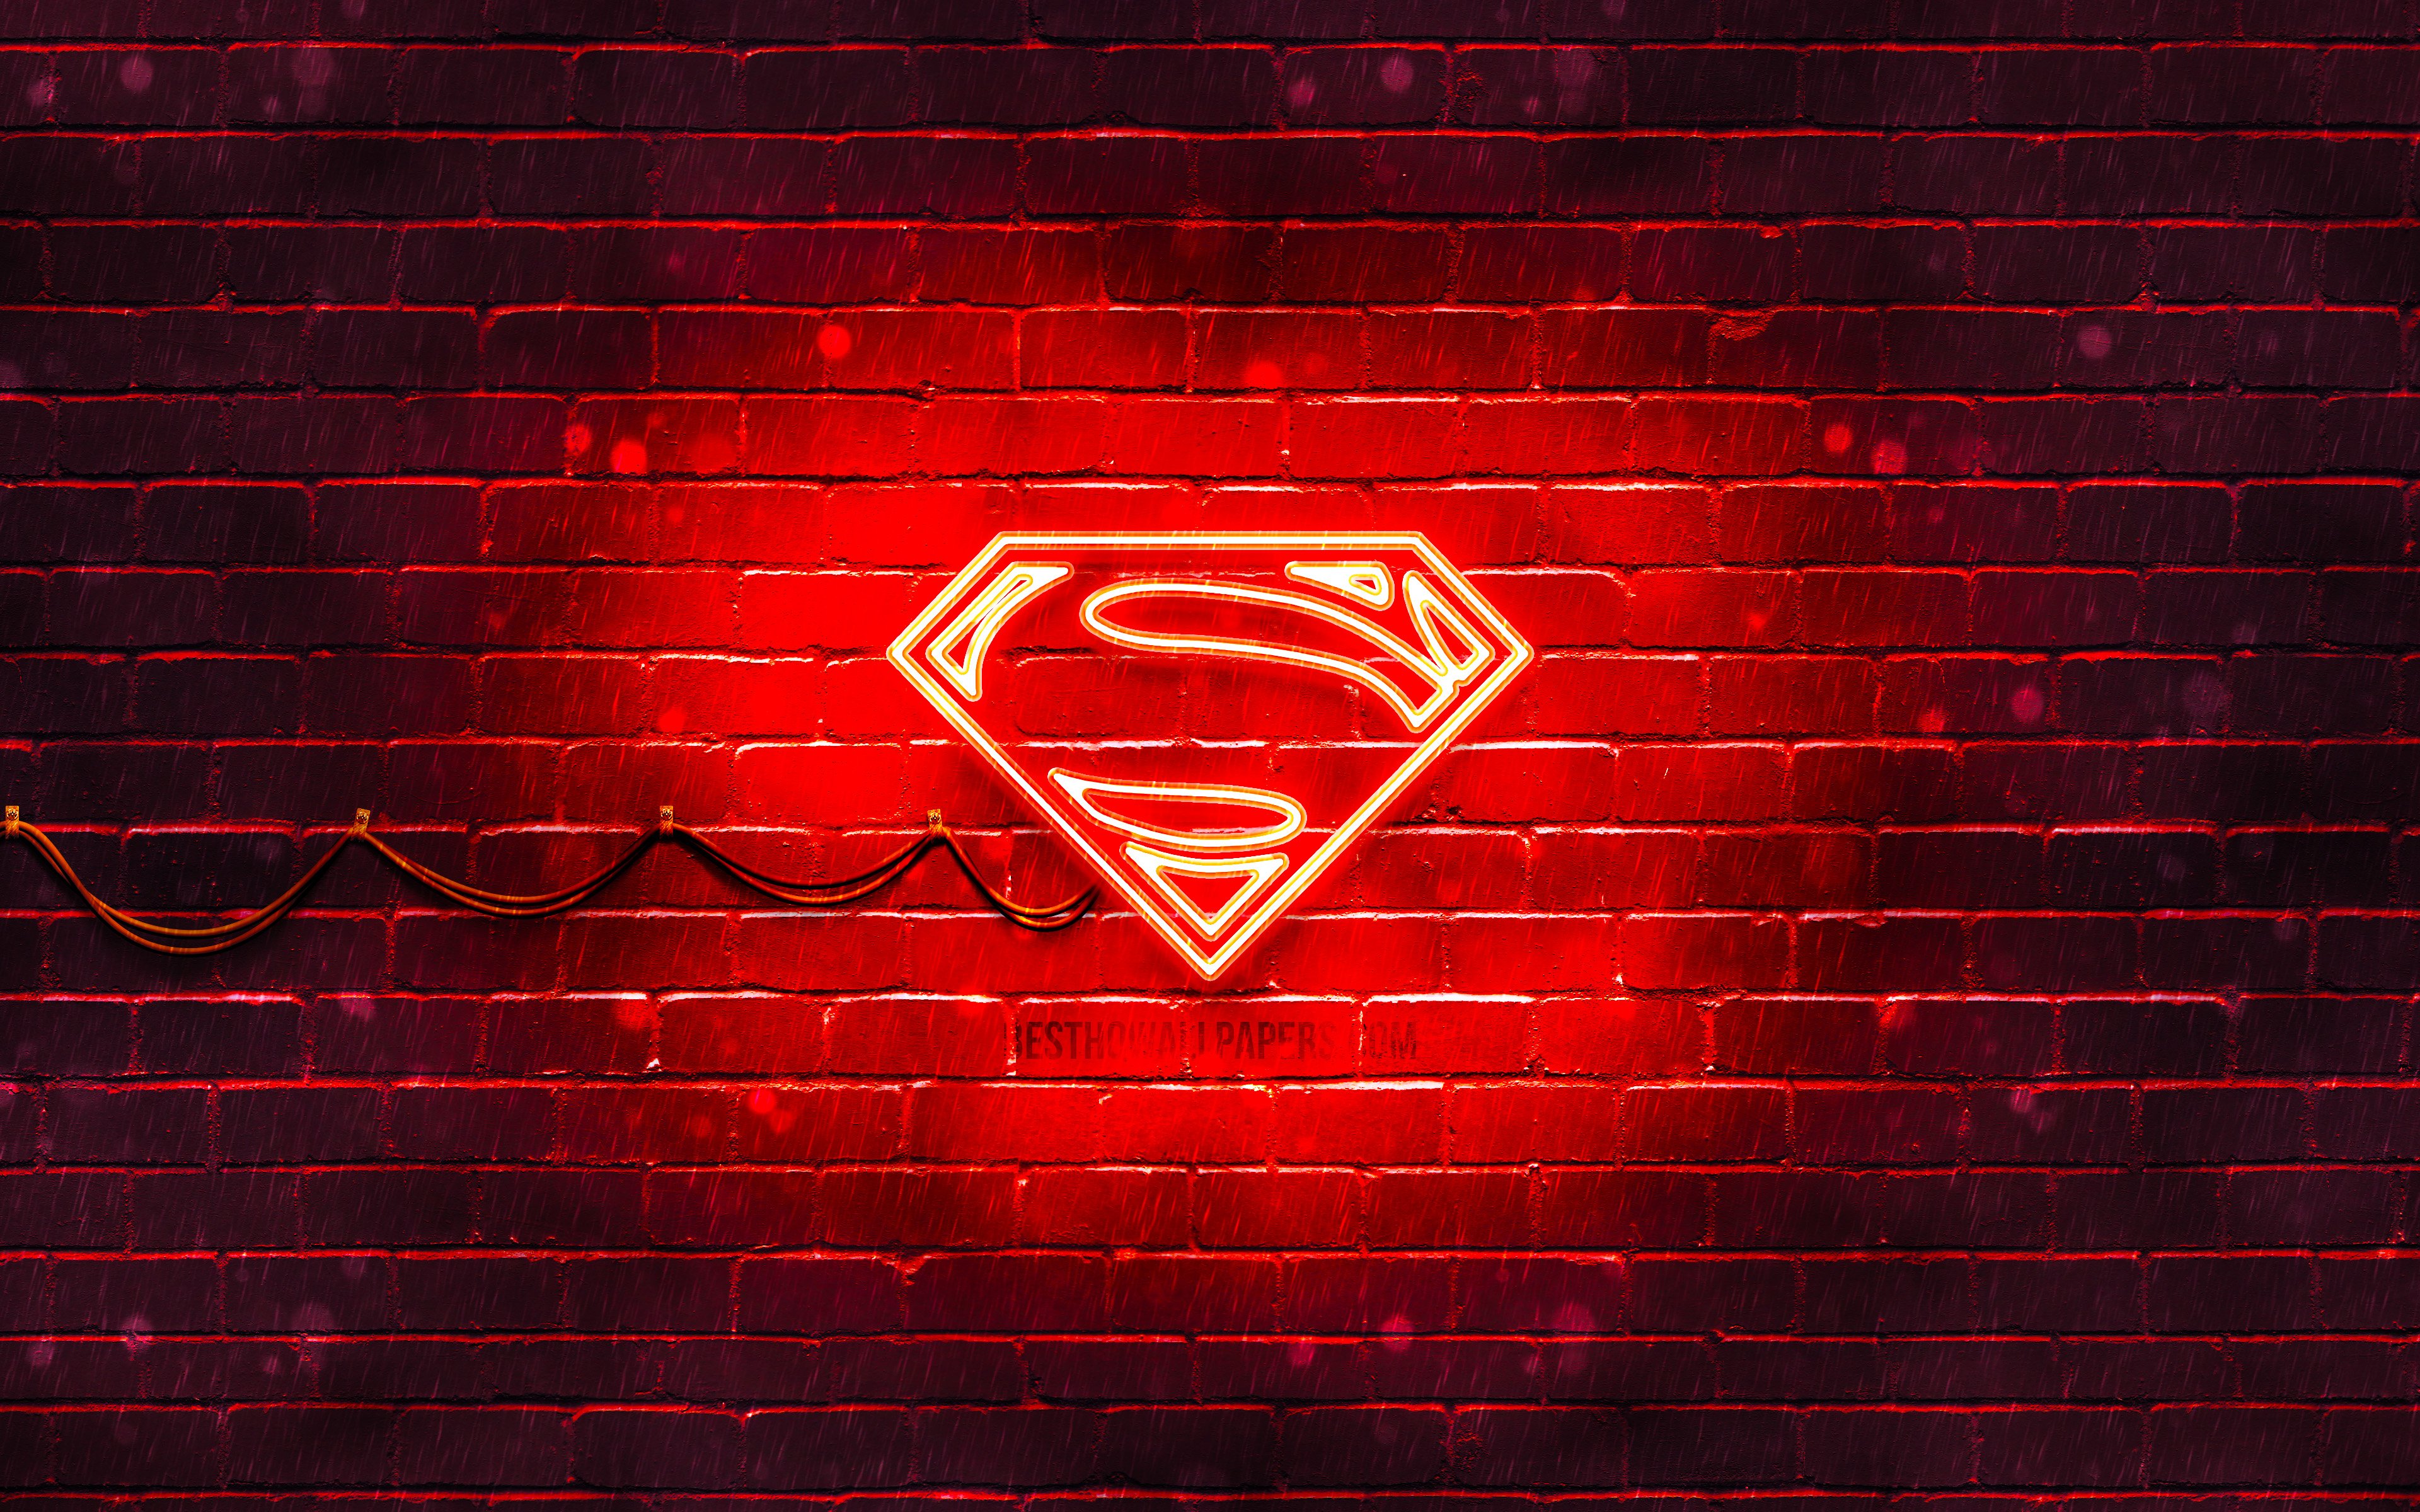 ダウンロード画像 スーパーマン赤ロゴ 4k 赤brickwall スーパーマンマーク 嵐 スーパーマンネオンのロゴ スーパーマン 画面の解像度 3840x2400 壁紙デスクトップ上